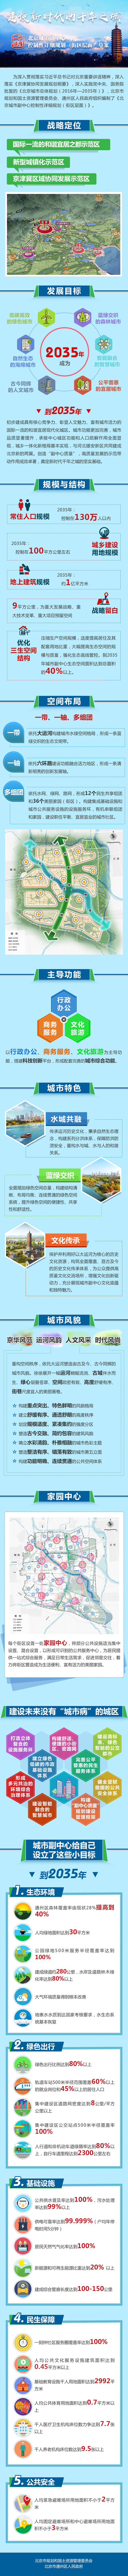 北京城市副中心设计图出炉 绿色出行比例需达80%以上